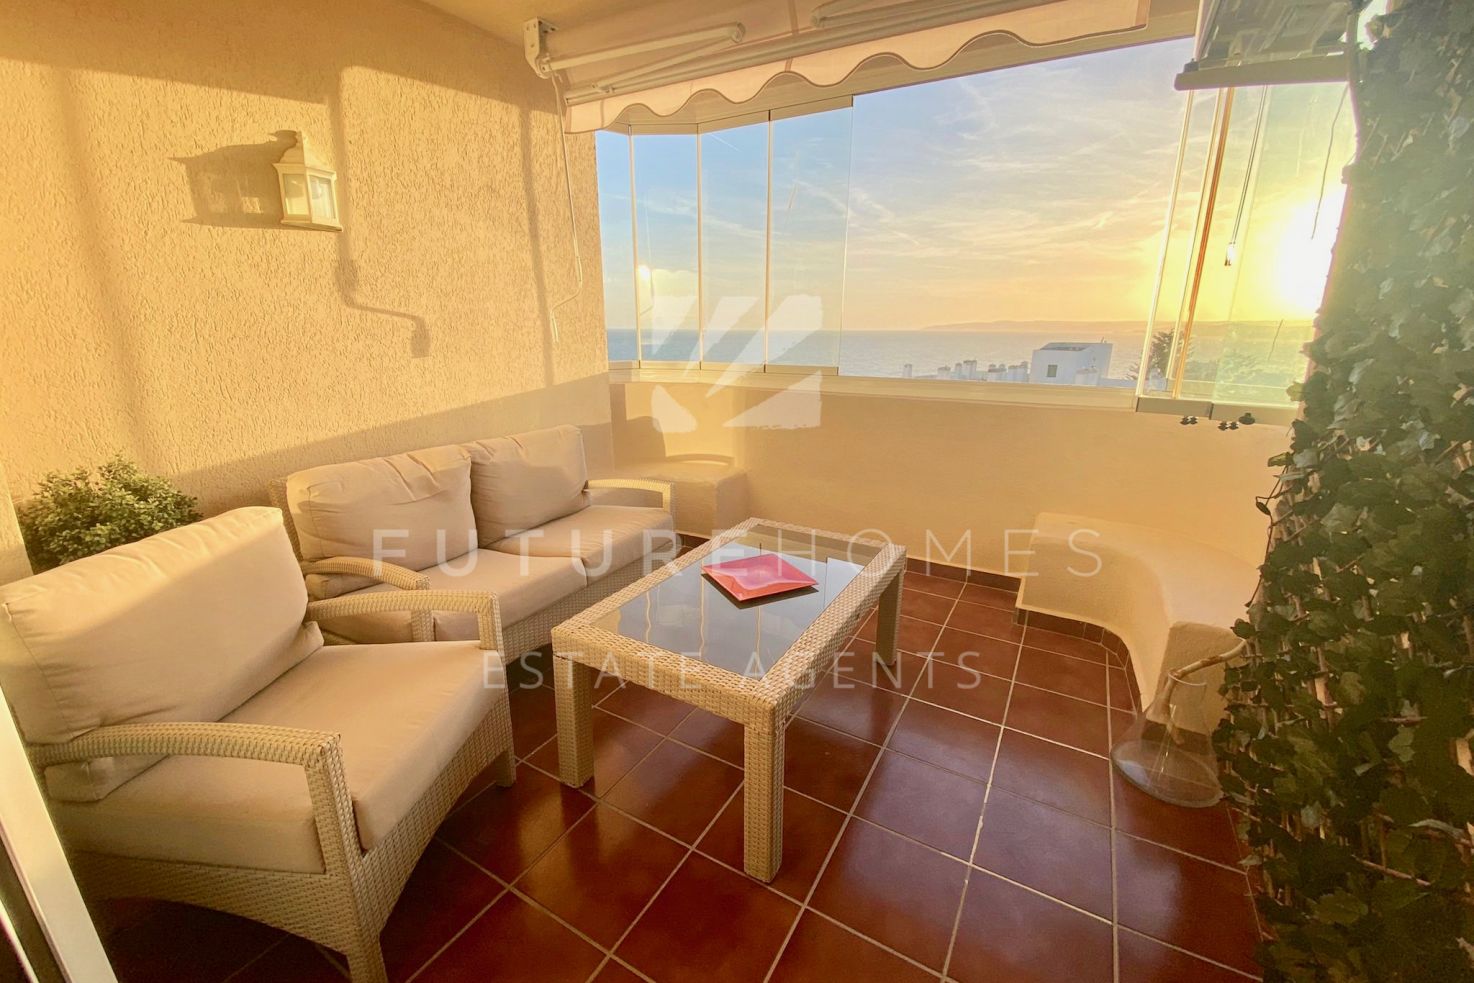 Fantastico apartamento de dos dormitorios en el Puerto de Estepona  con super vistas al mar!